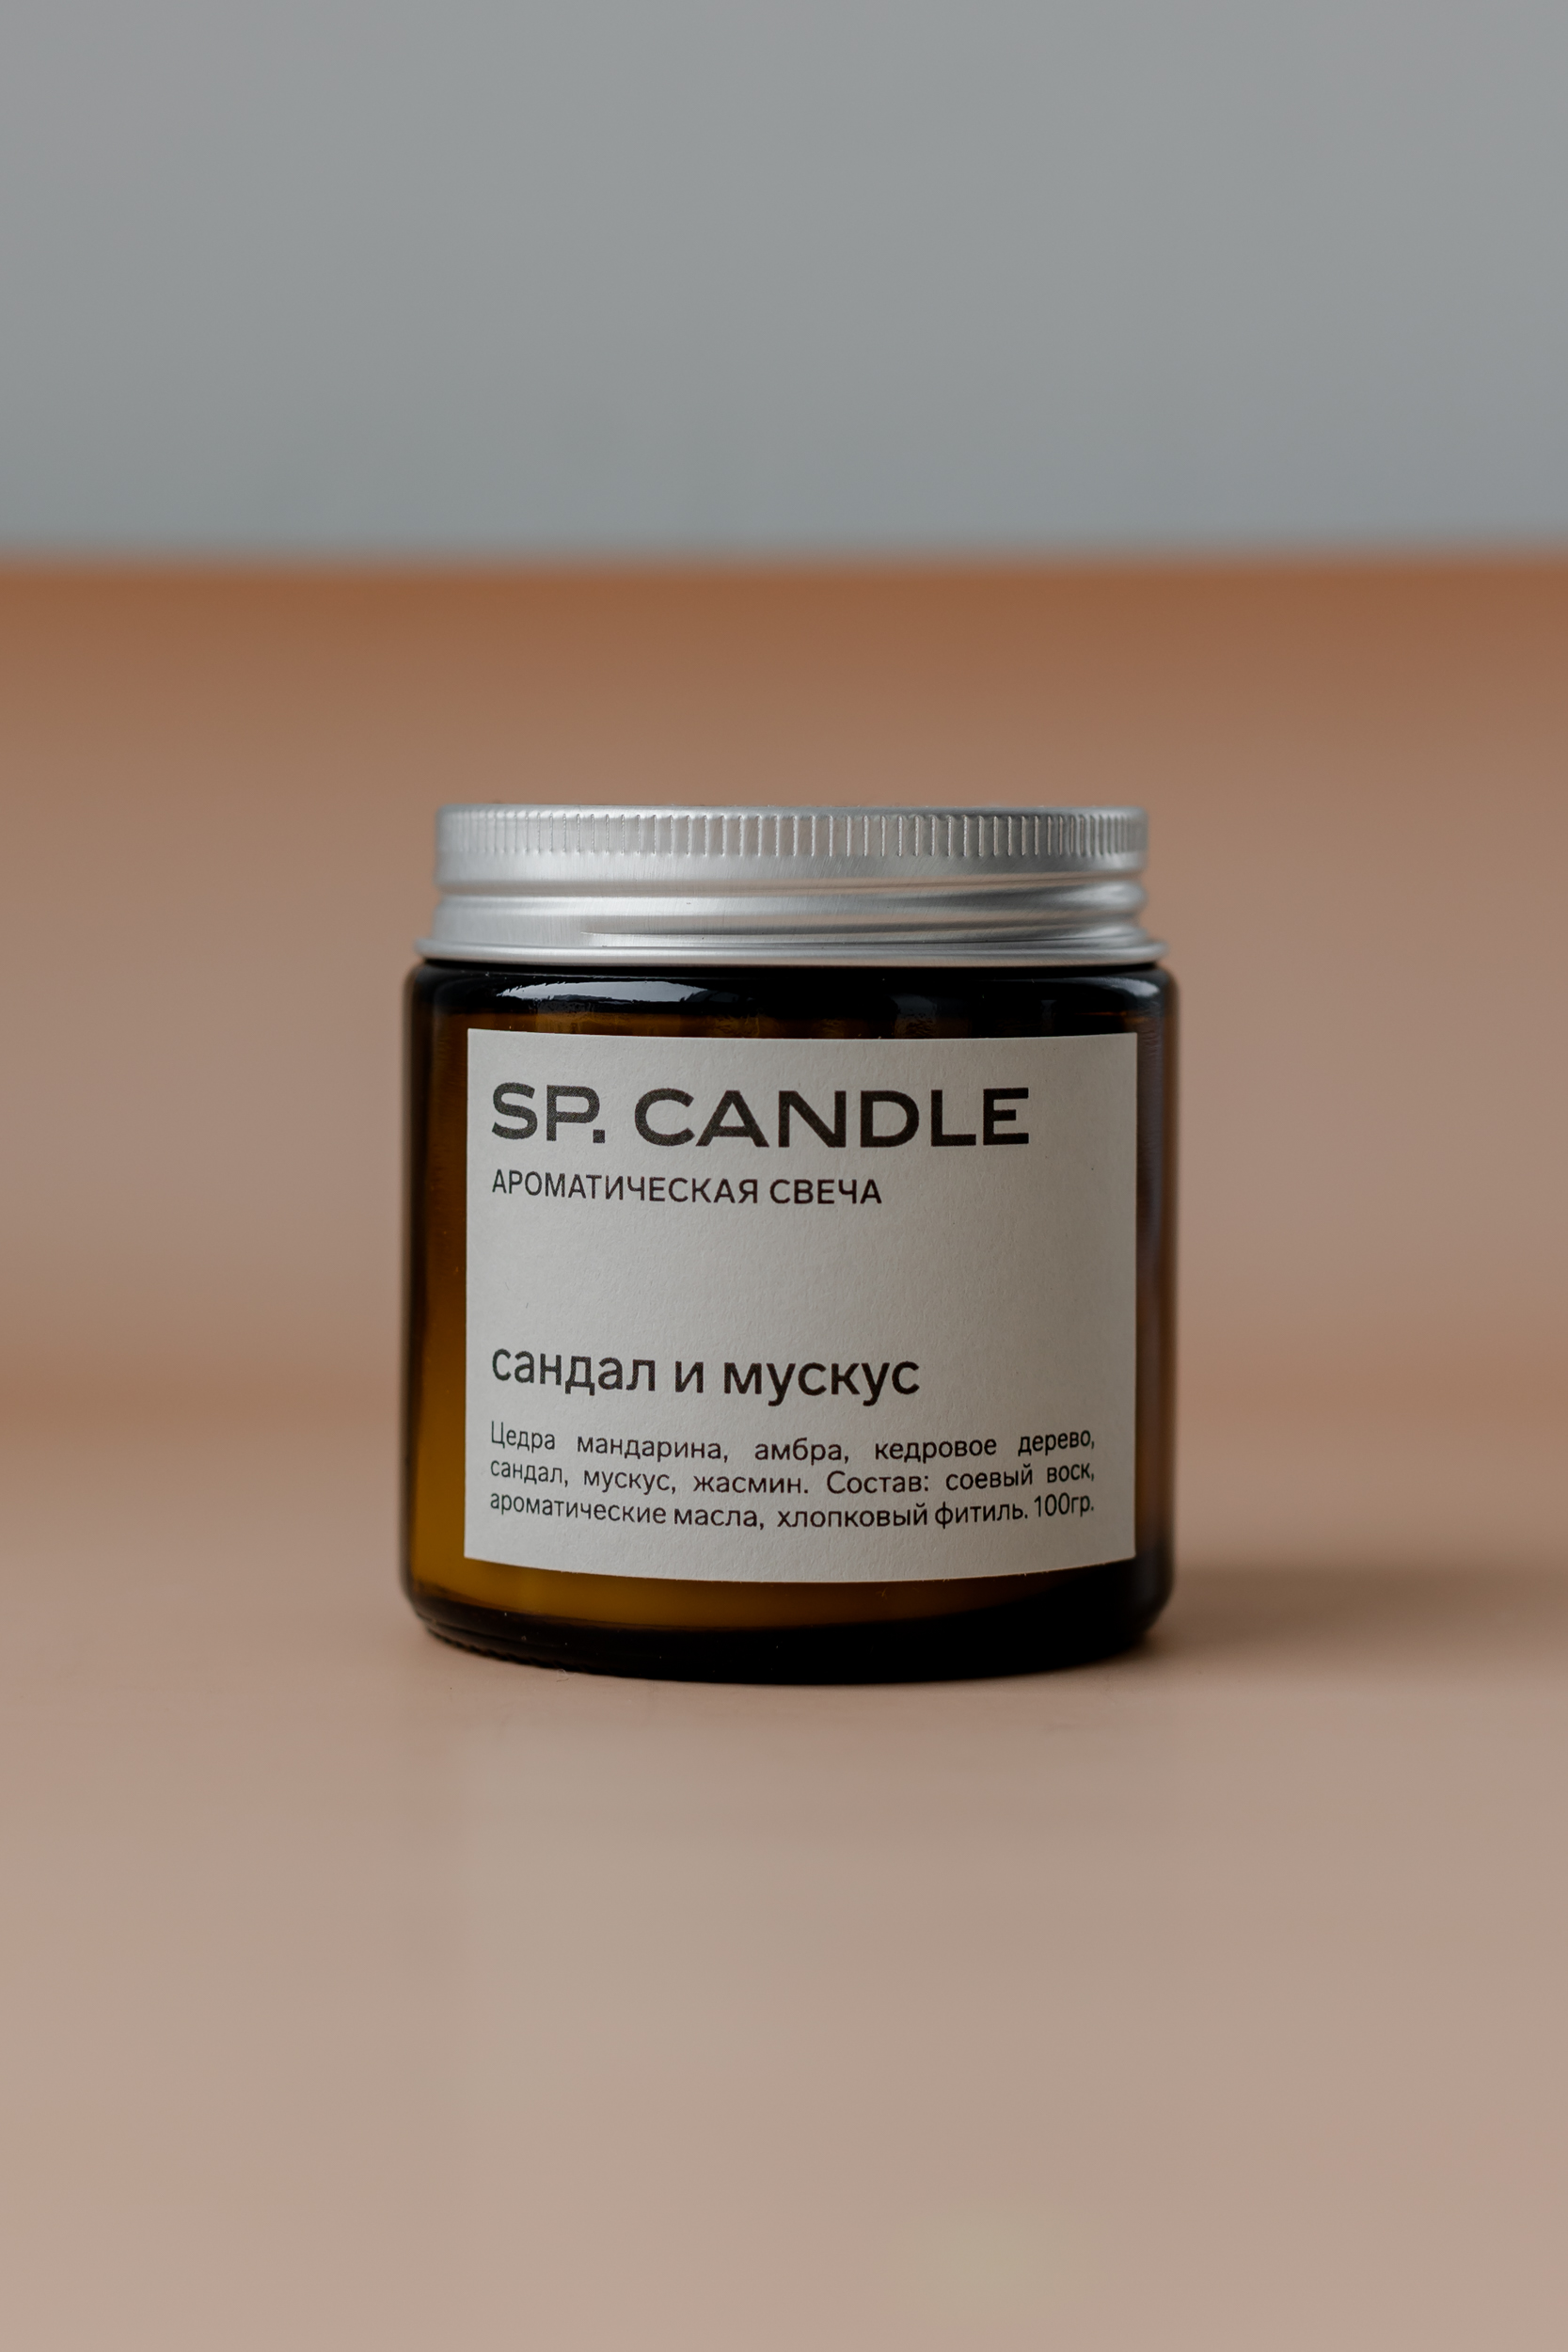 SP. CANDLE Ароматическая свеча Сандал и мускус, 100г - фото 1